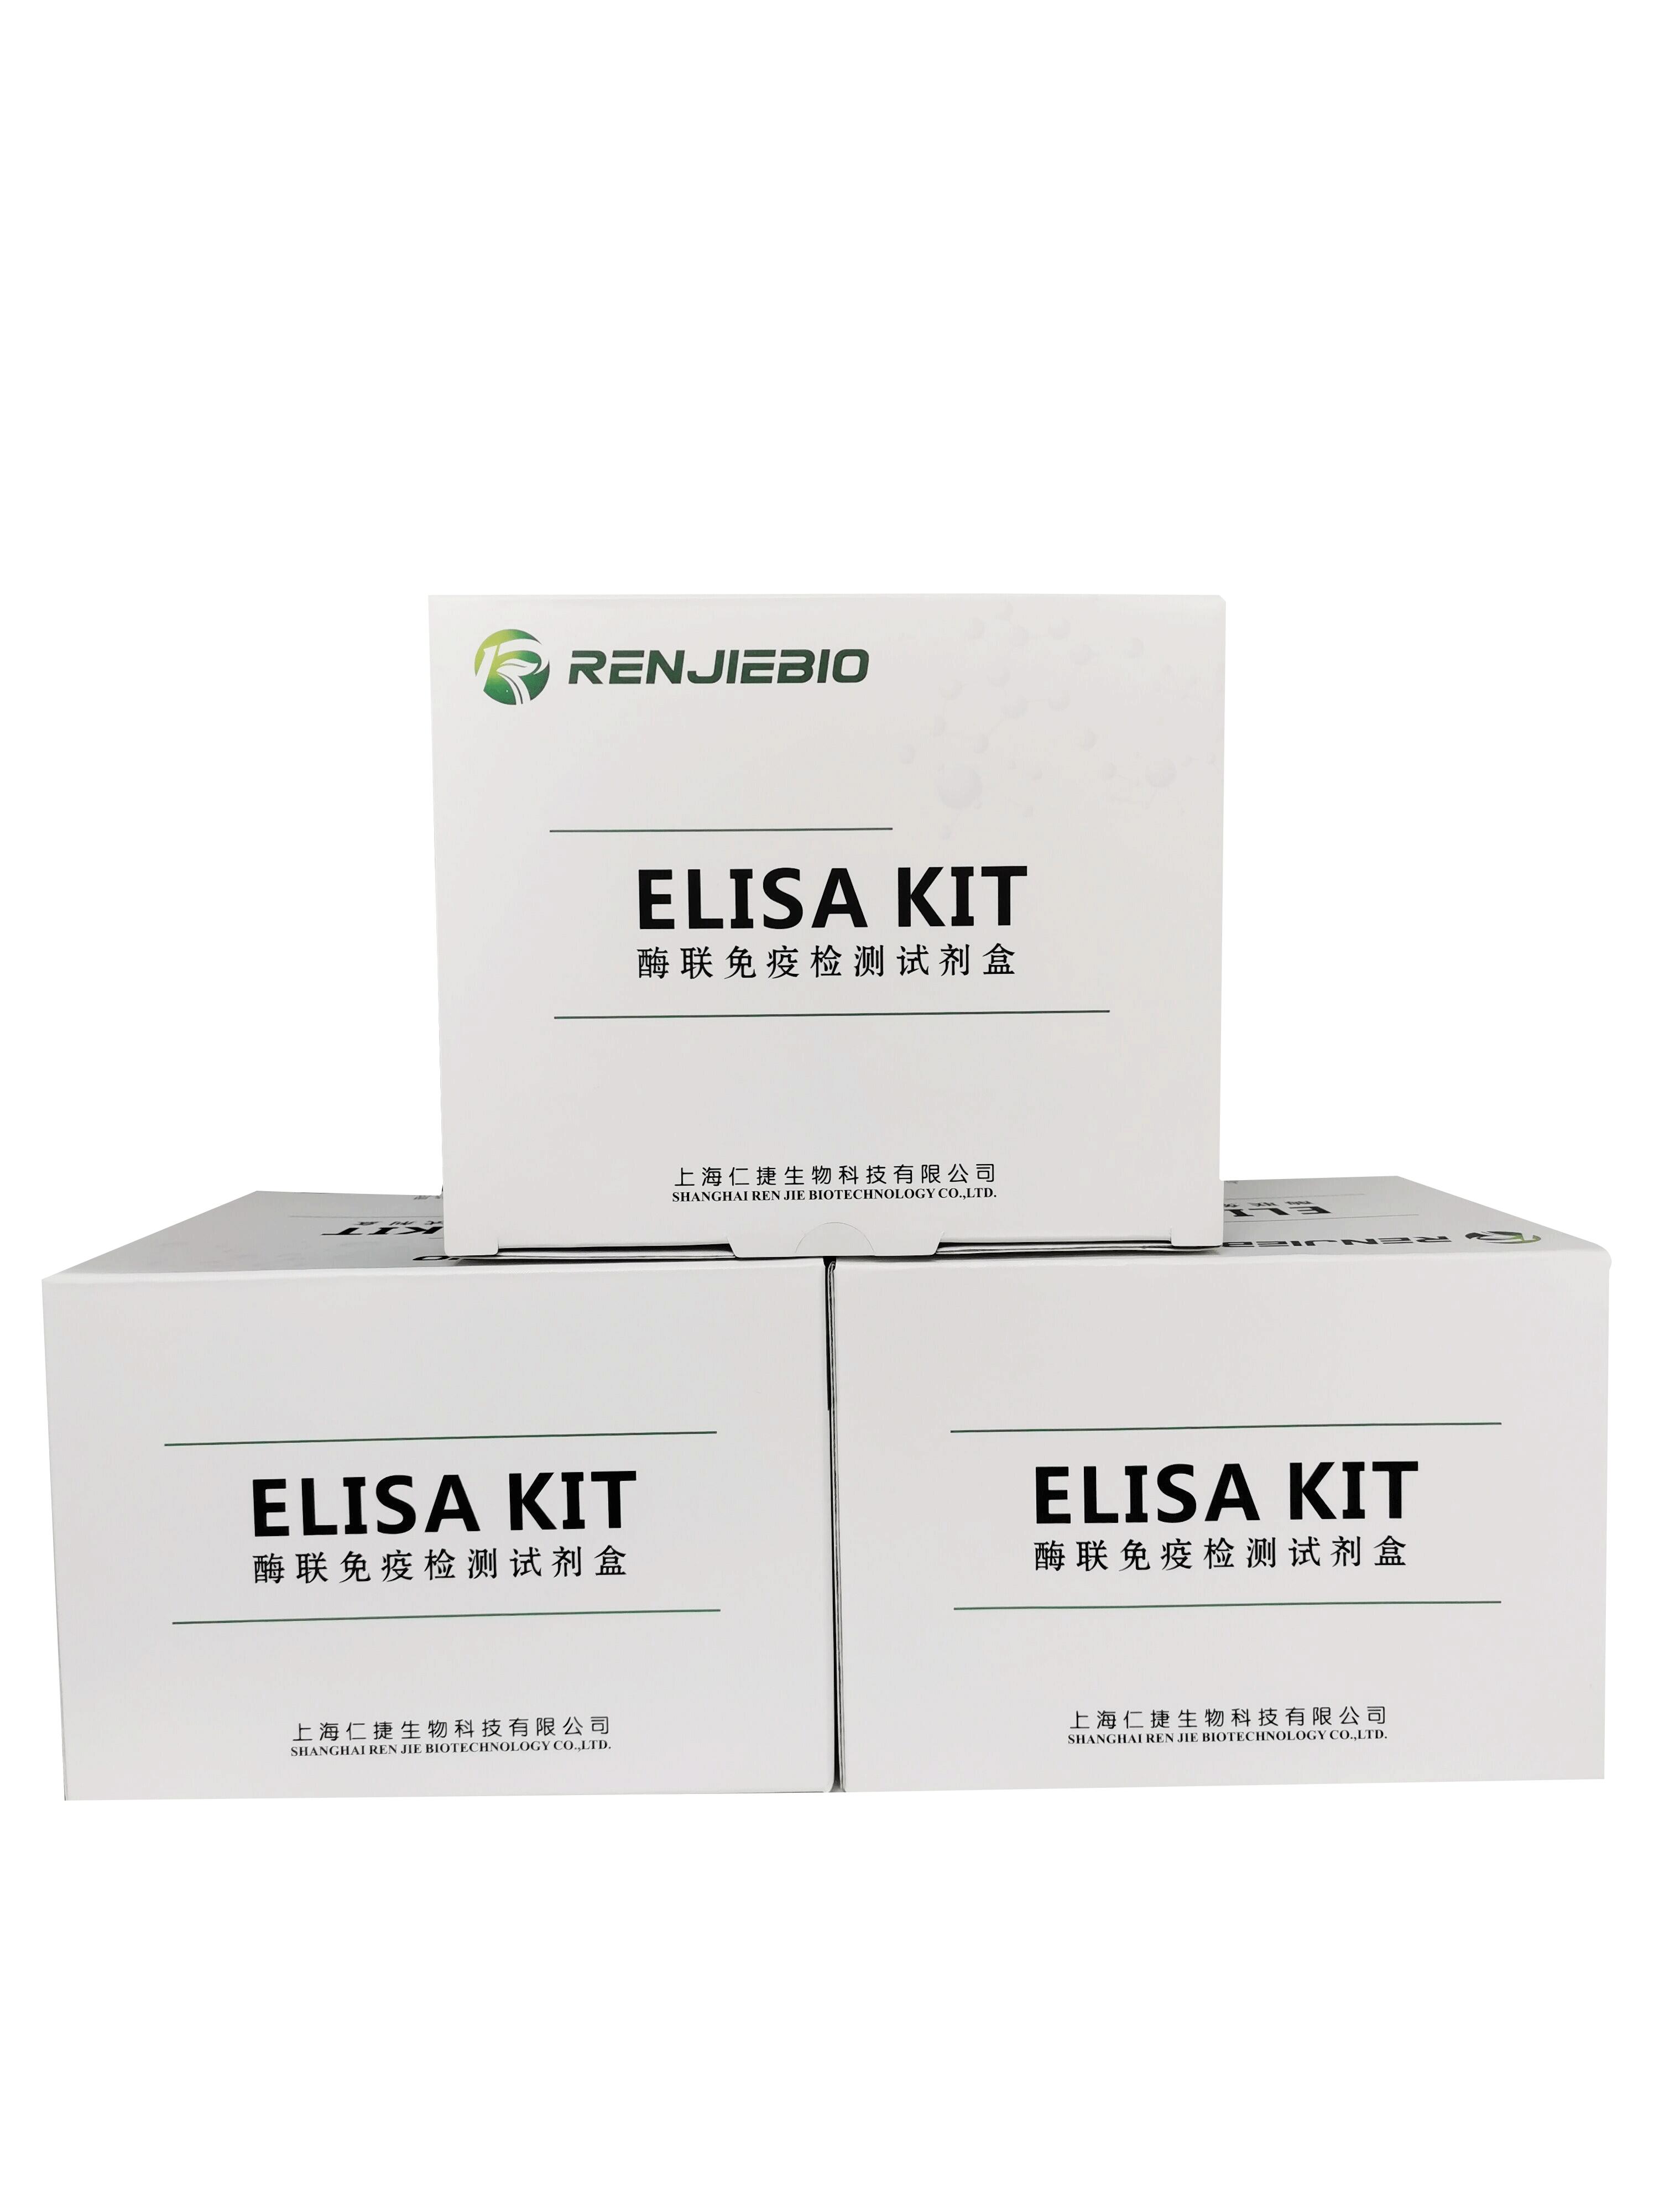 大鼠乙肝表面抗原（HBsAg）ELISA试剂盒